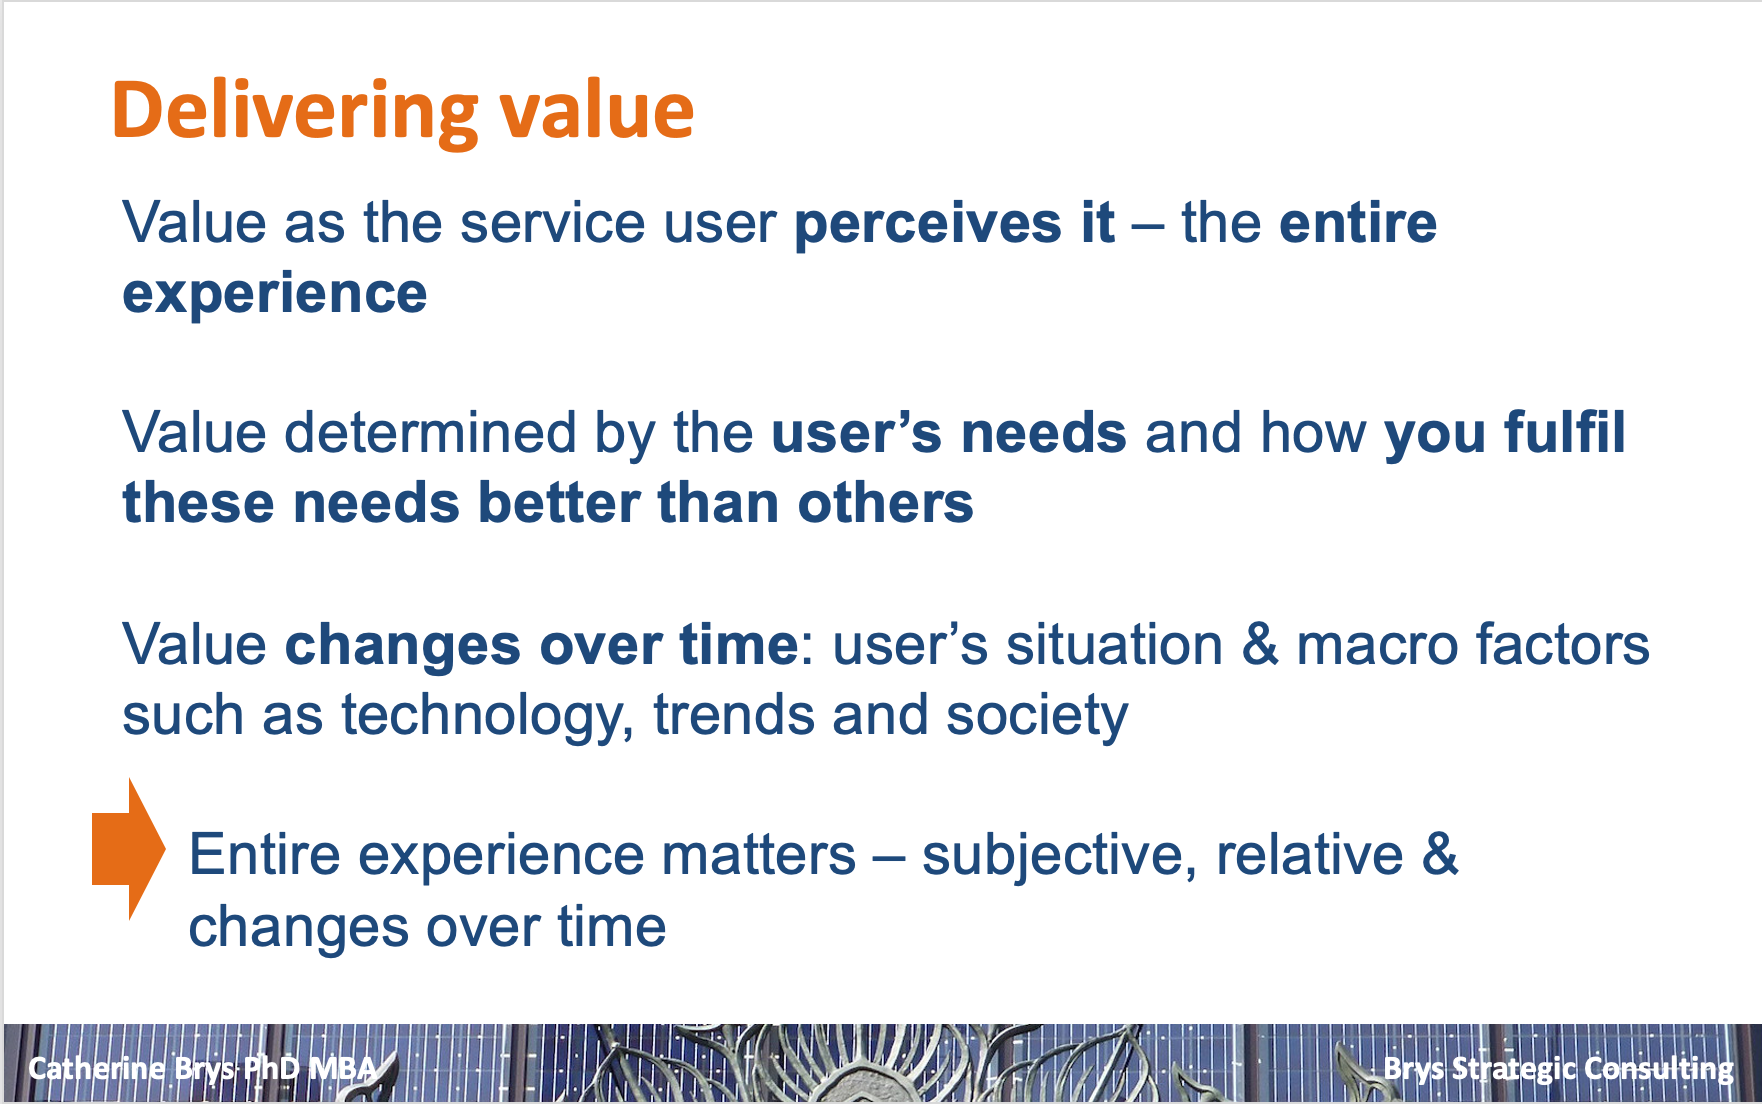 Sample slide on delivering value to the service user